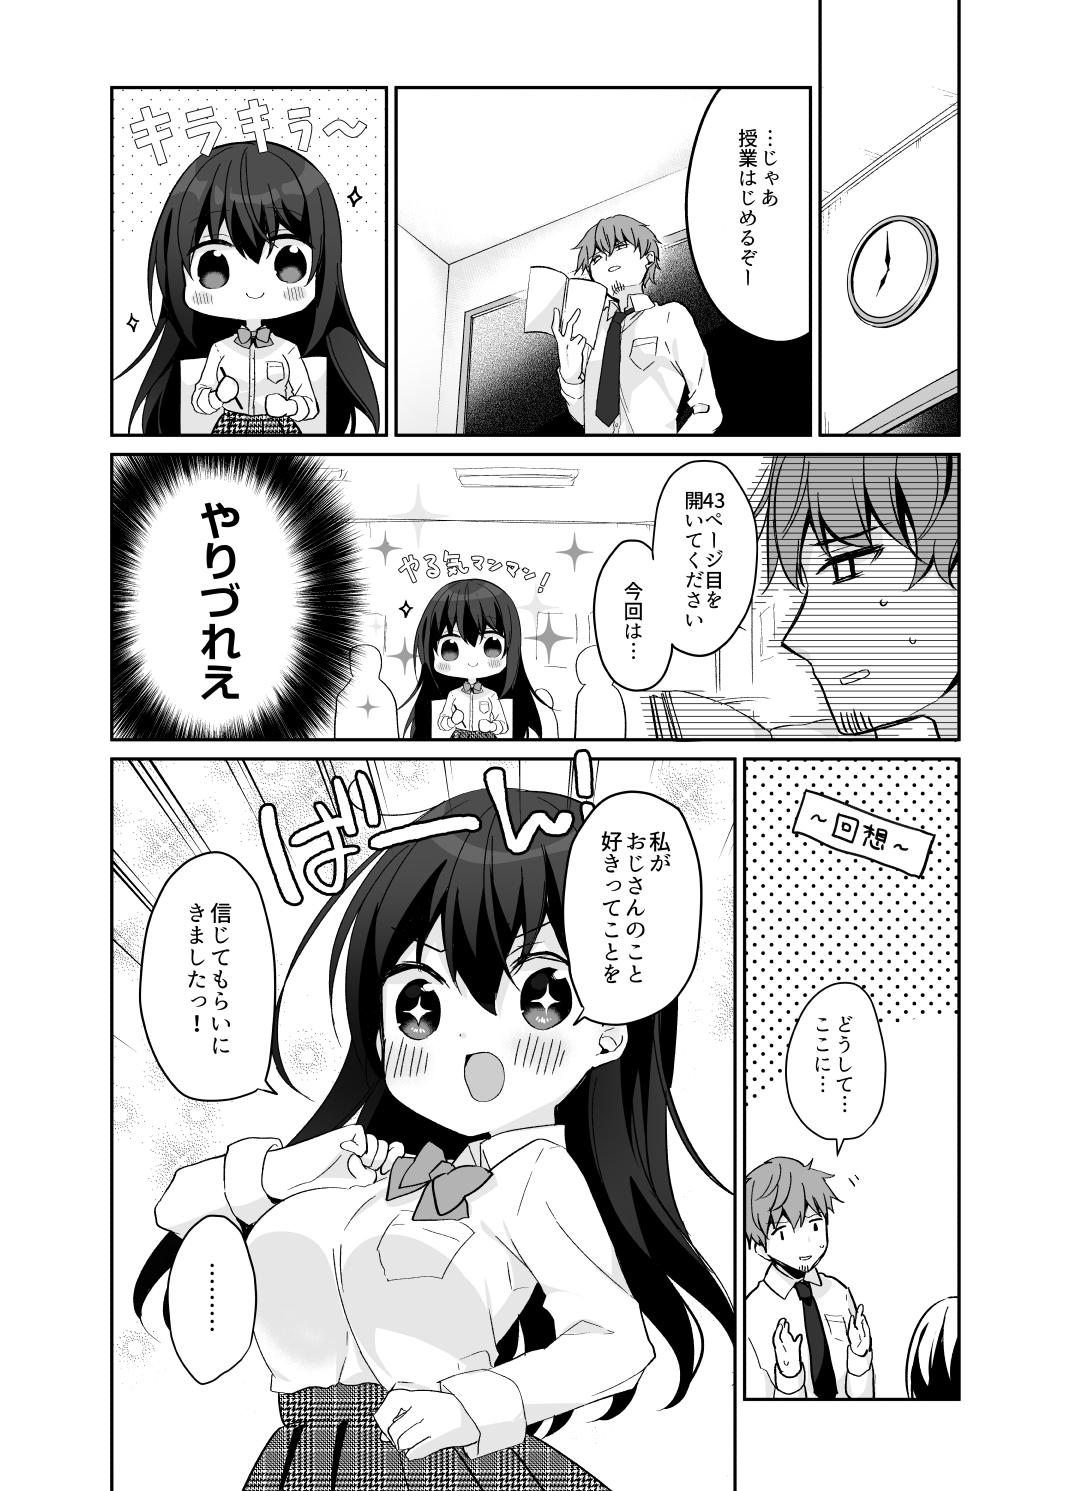 Tanga 12-sai Sa no Himitsu Renai 2 - Original Celebrity Sex Scene - Page 8